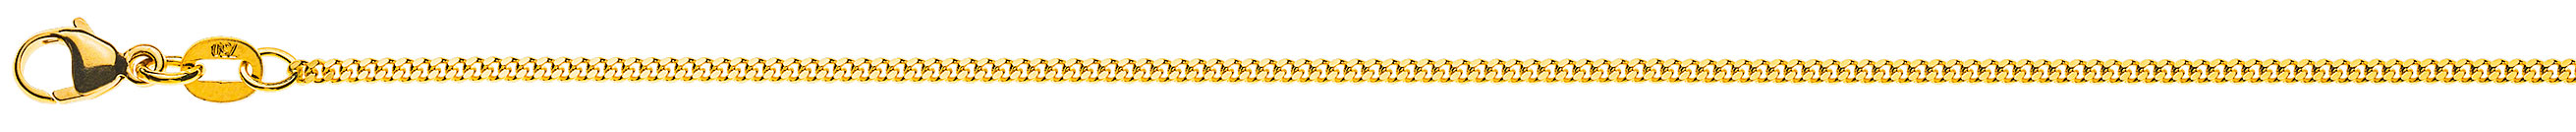 AURONOS Prestige Halskette Gelbgold 18K Panzerkette geschliffen 50cm 1.6mm